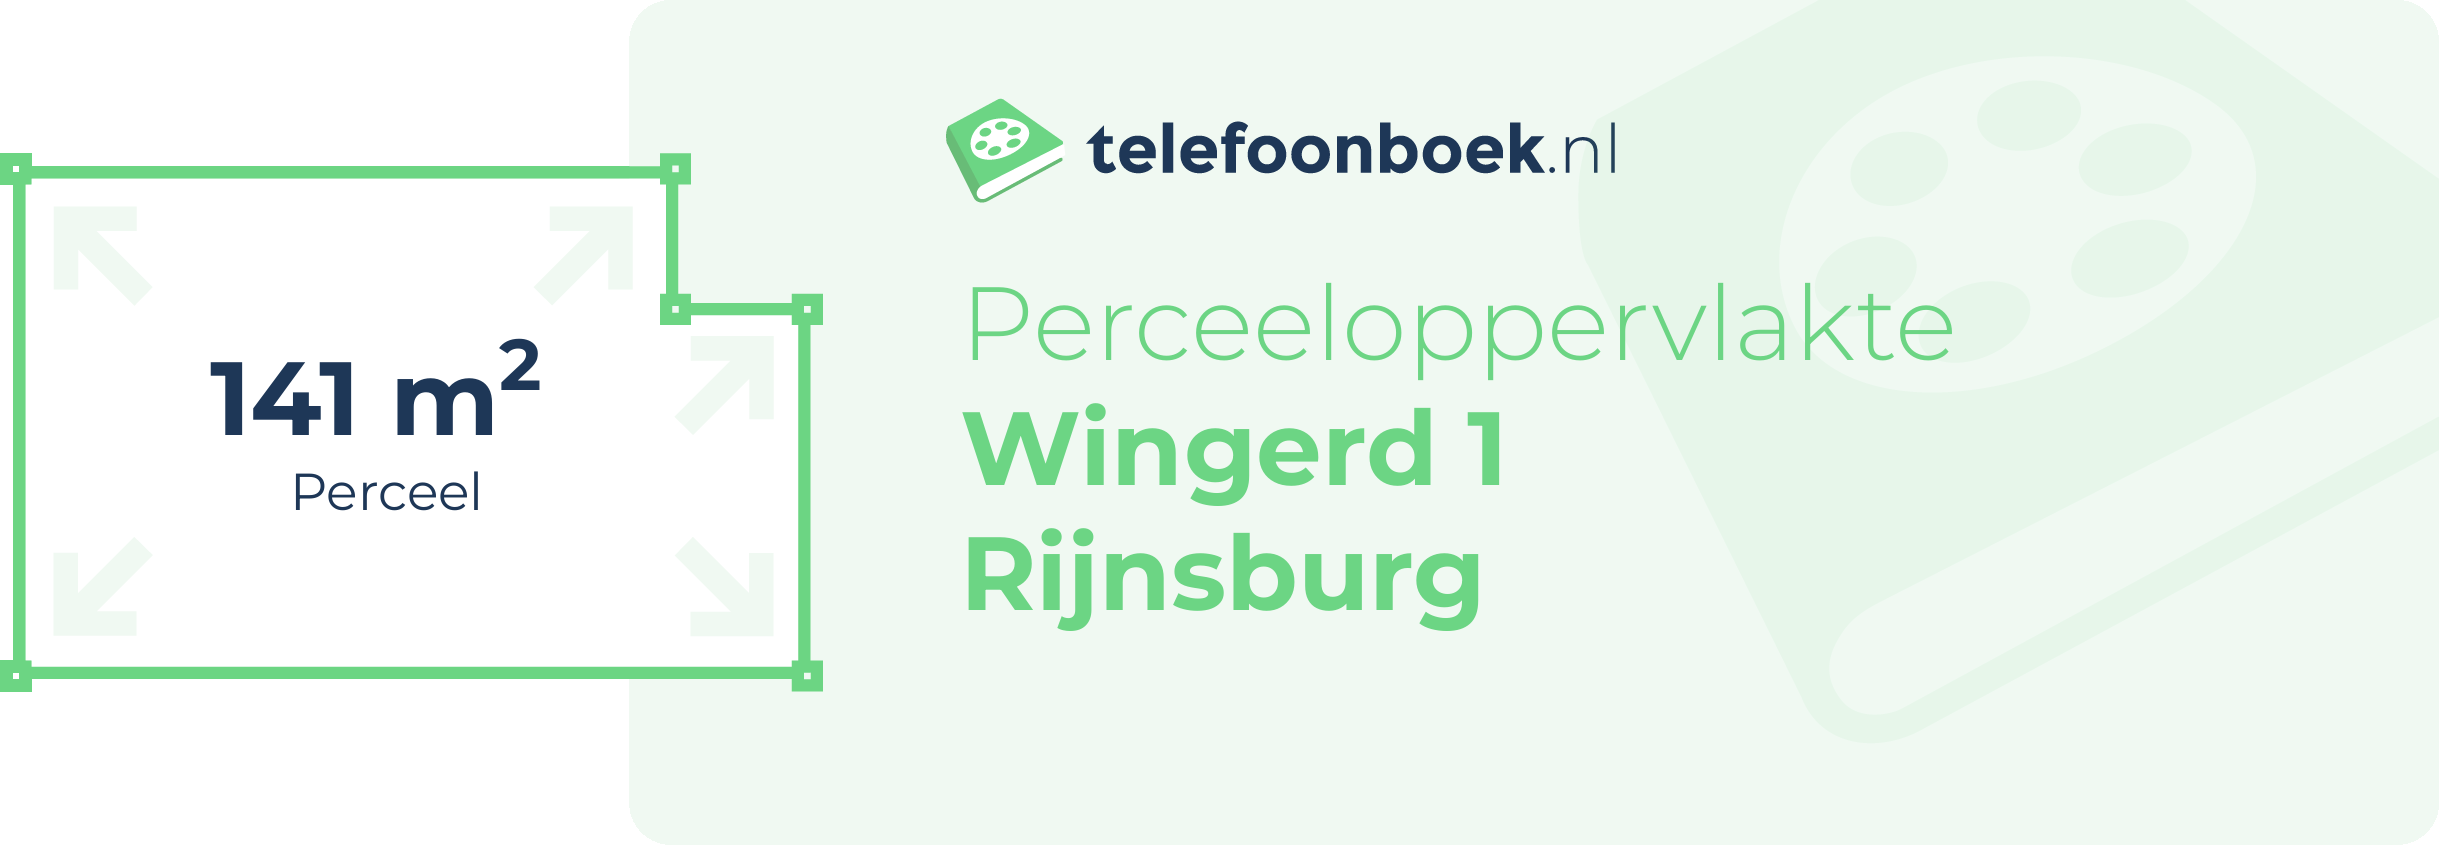 Perceeloppervlakte Wingerd 1 Rijnsburg